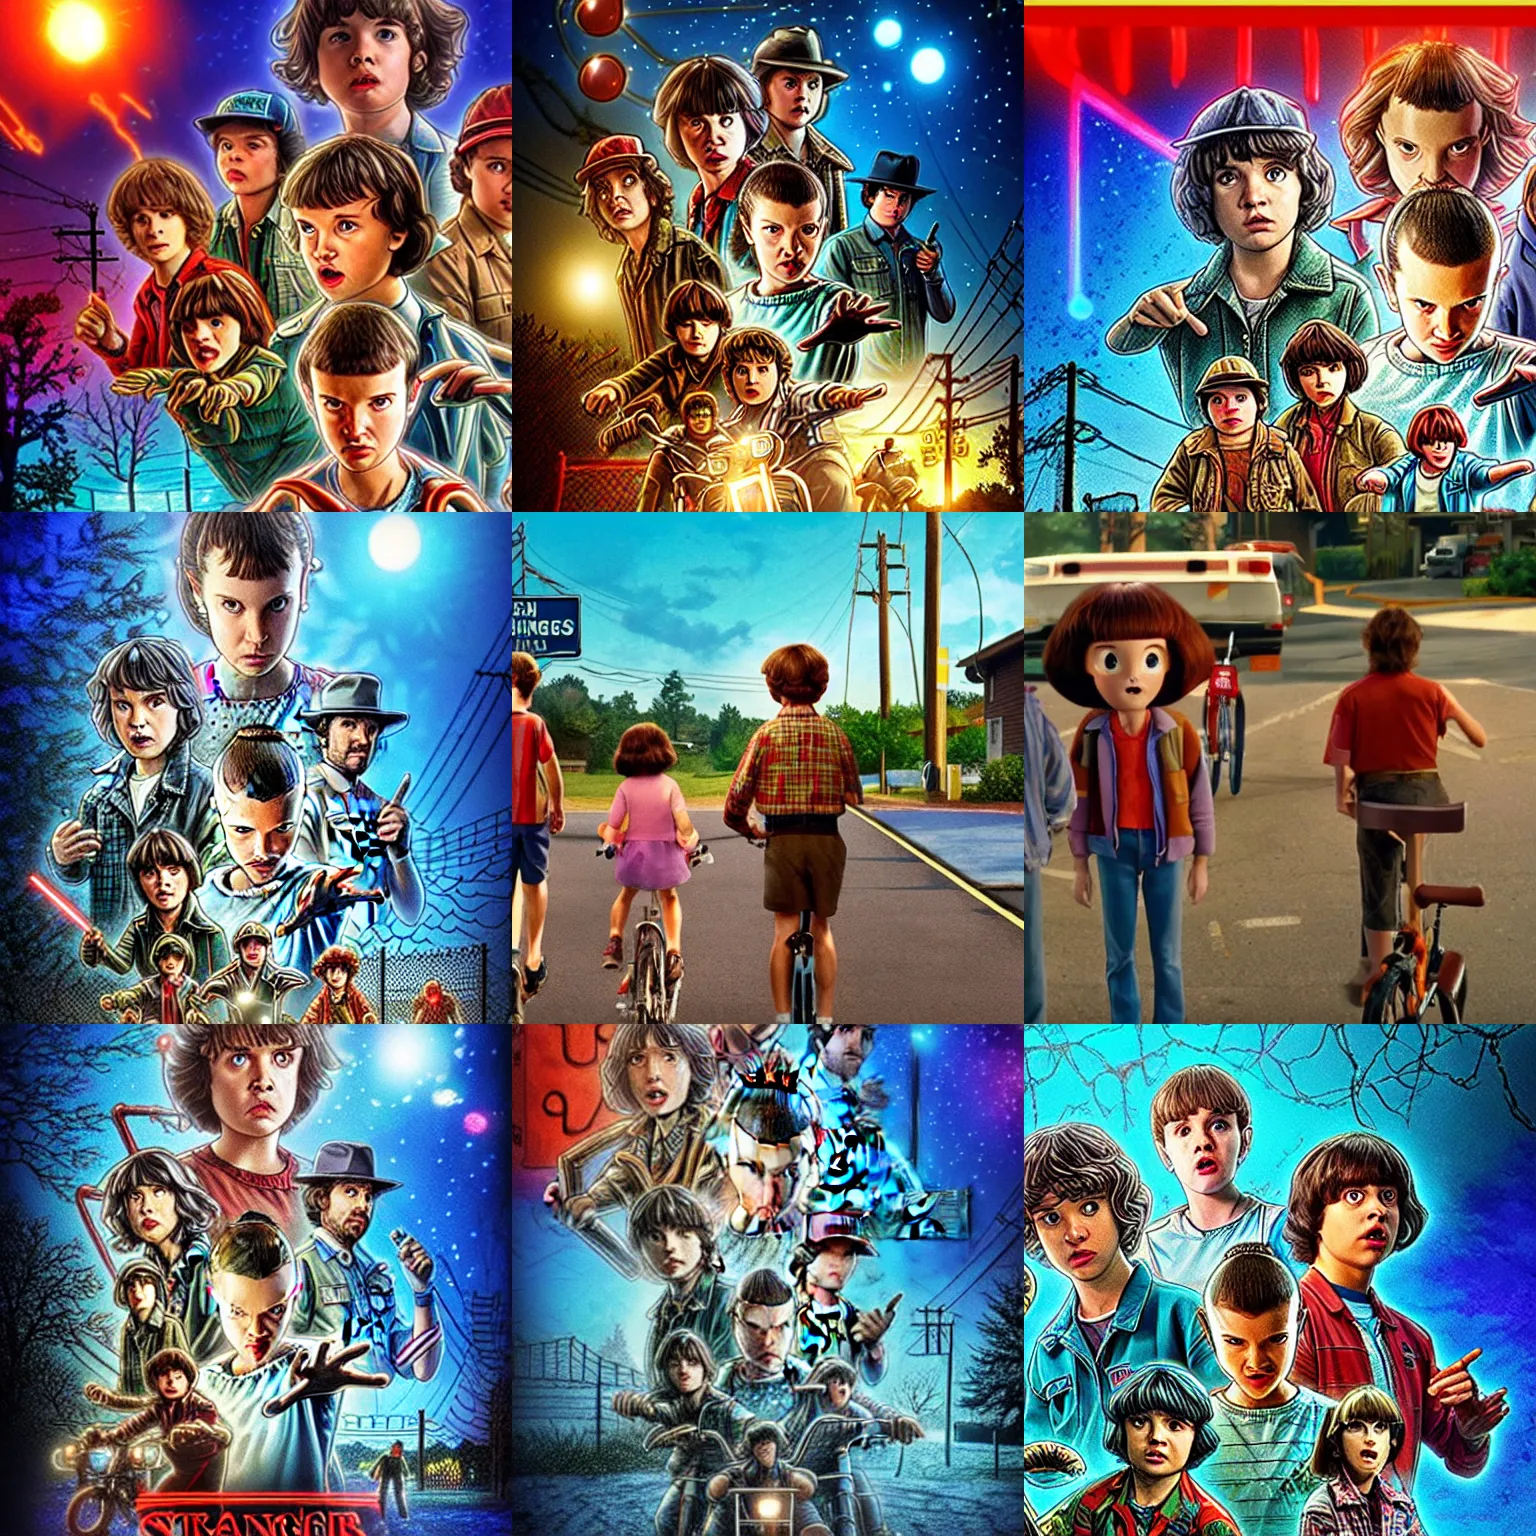 Prompt: Stranger Things as seen in Disney Pixar‘s Up (2009)